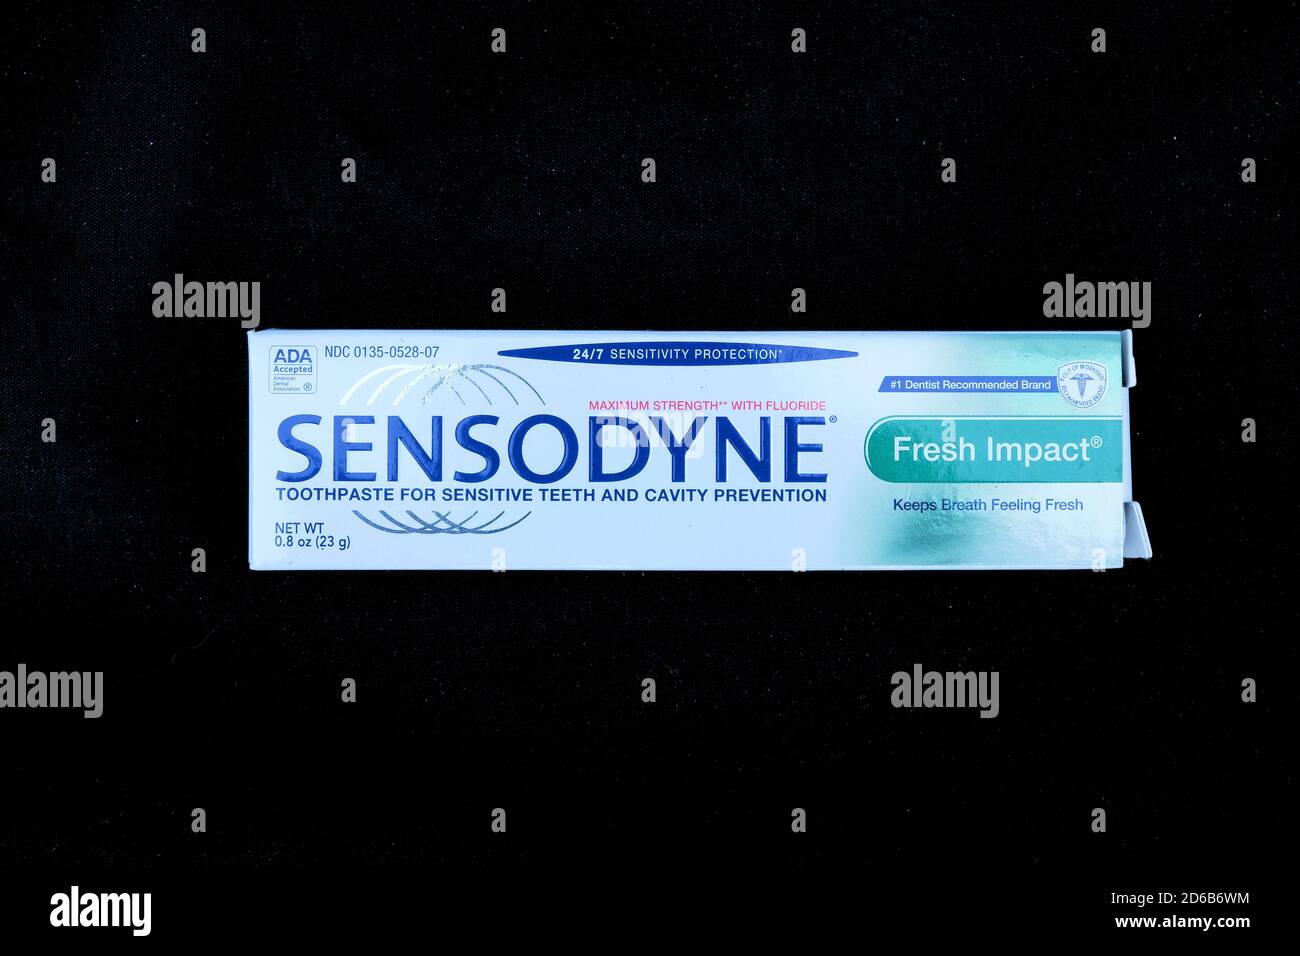 Paket von Sensodyne Zahnpasta vermarktet als anticavity-Gebiss für  empfindliche Zähne; Fresh Impact; kostenlose Probe vom Zahnarzt für  Patienten gegeben Stockfotografie - Alamy